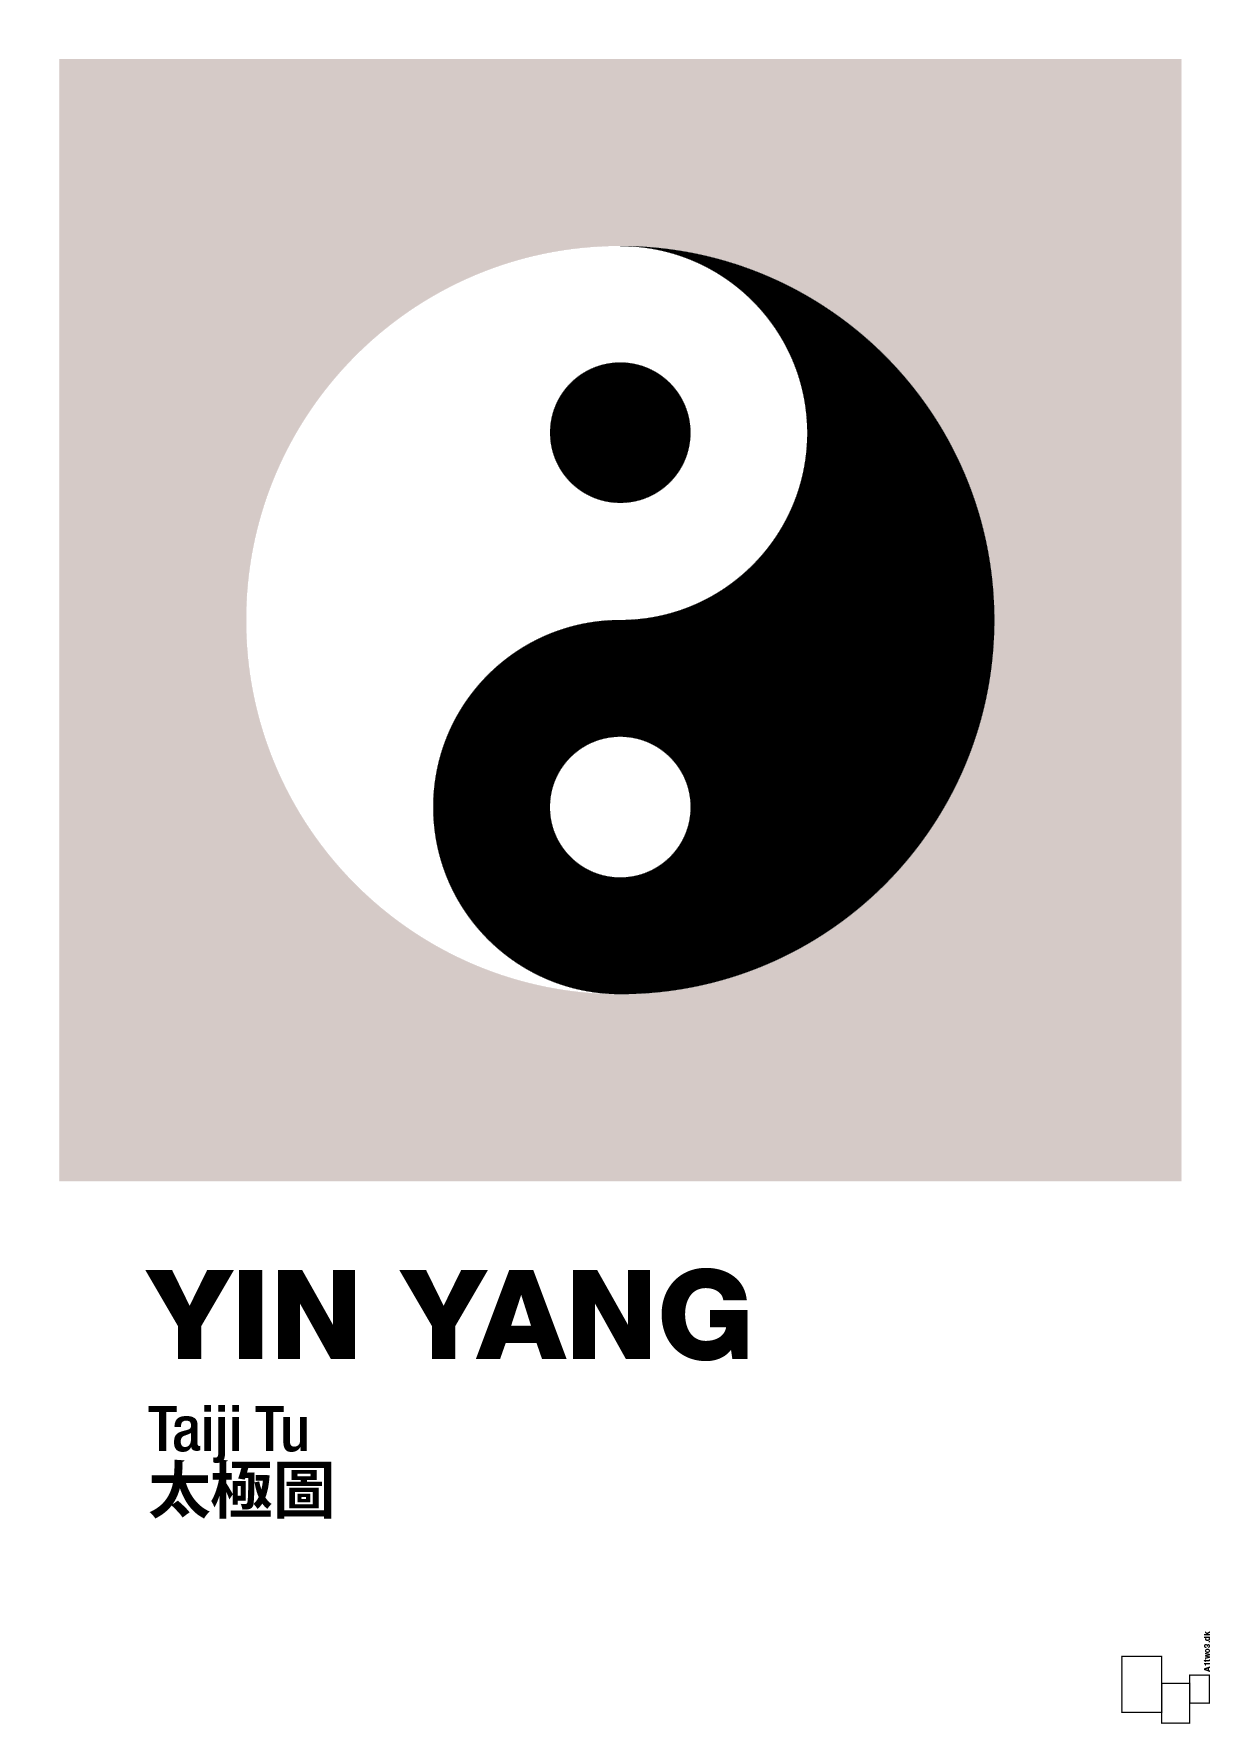 yin yang - Plakat med Videnskab i Broken Beige